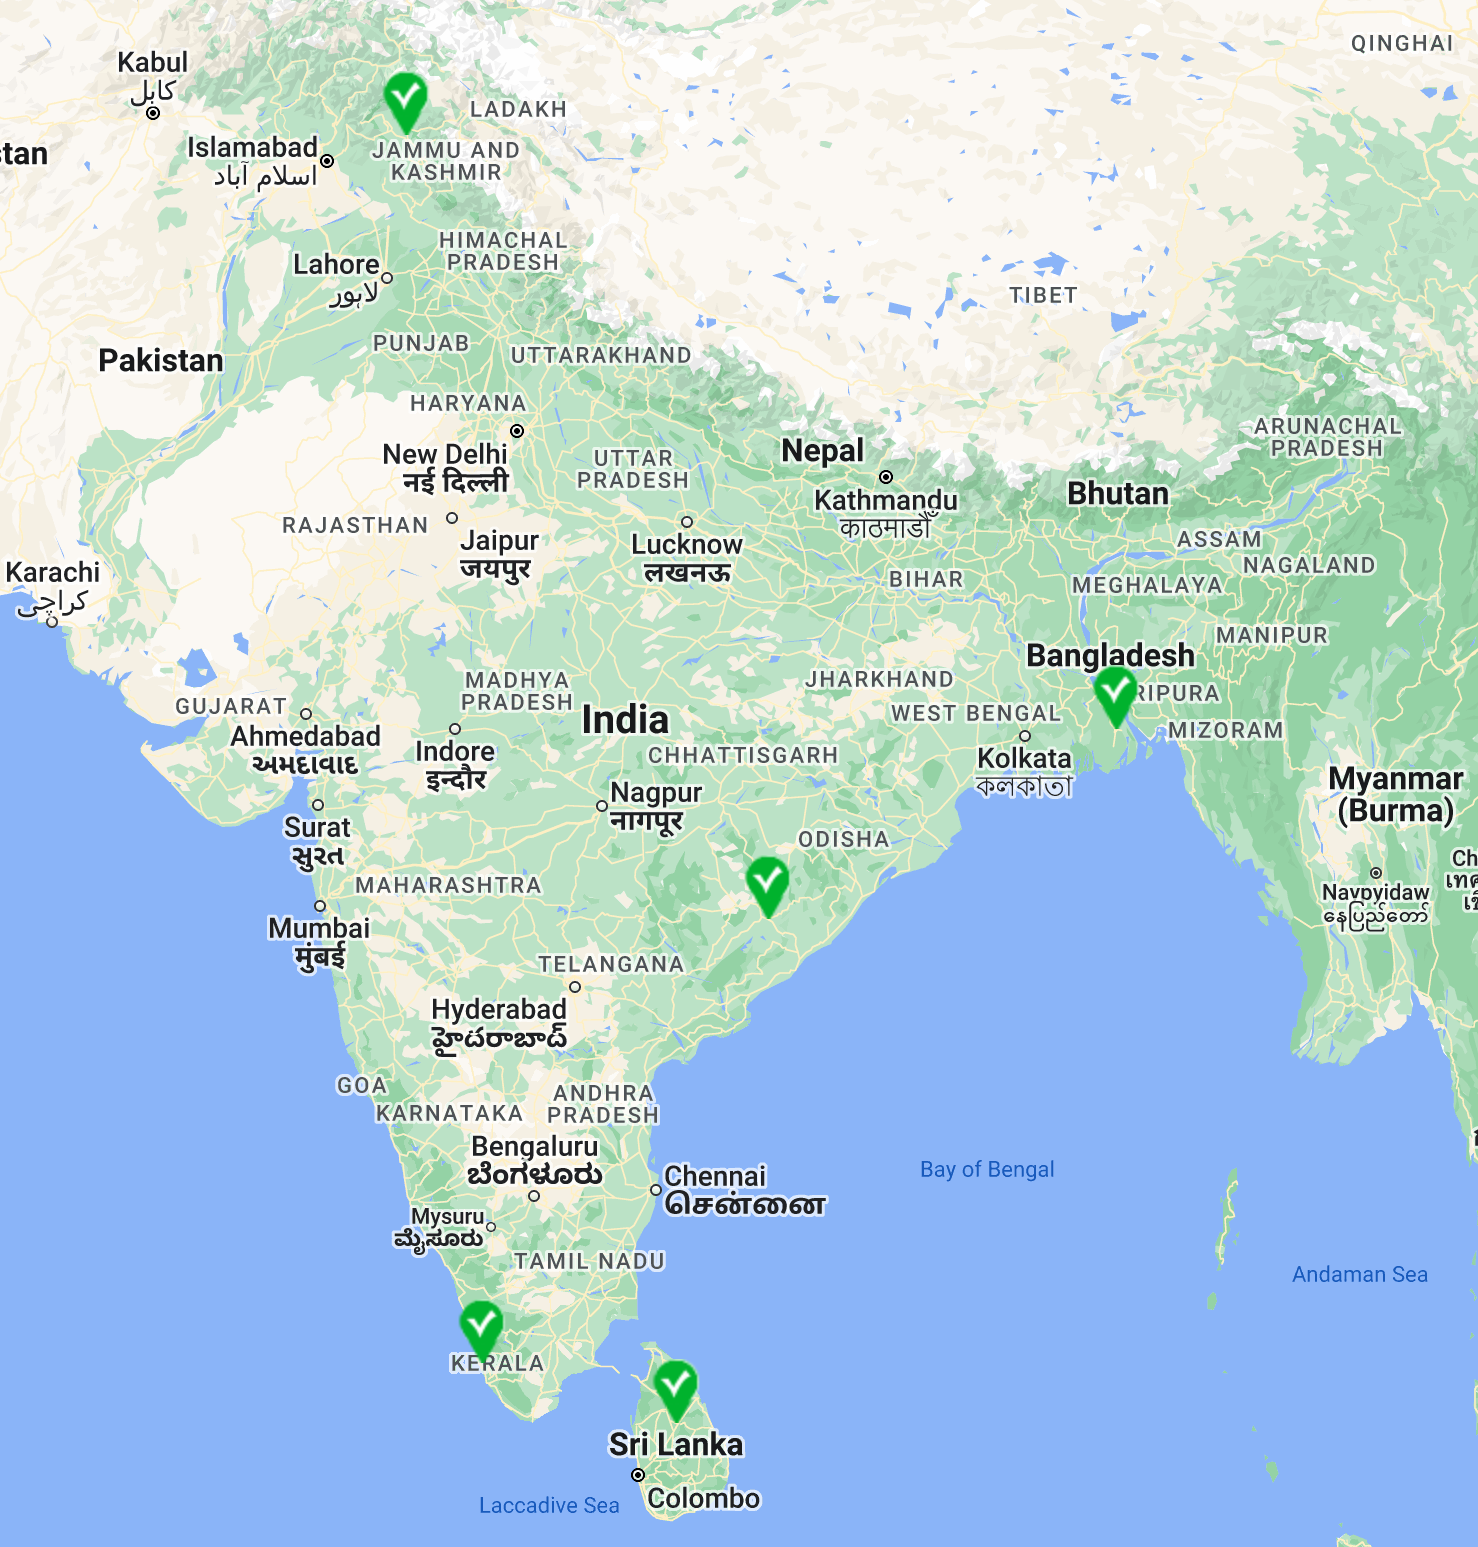 GIAHS Designated Sites in India